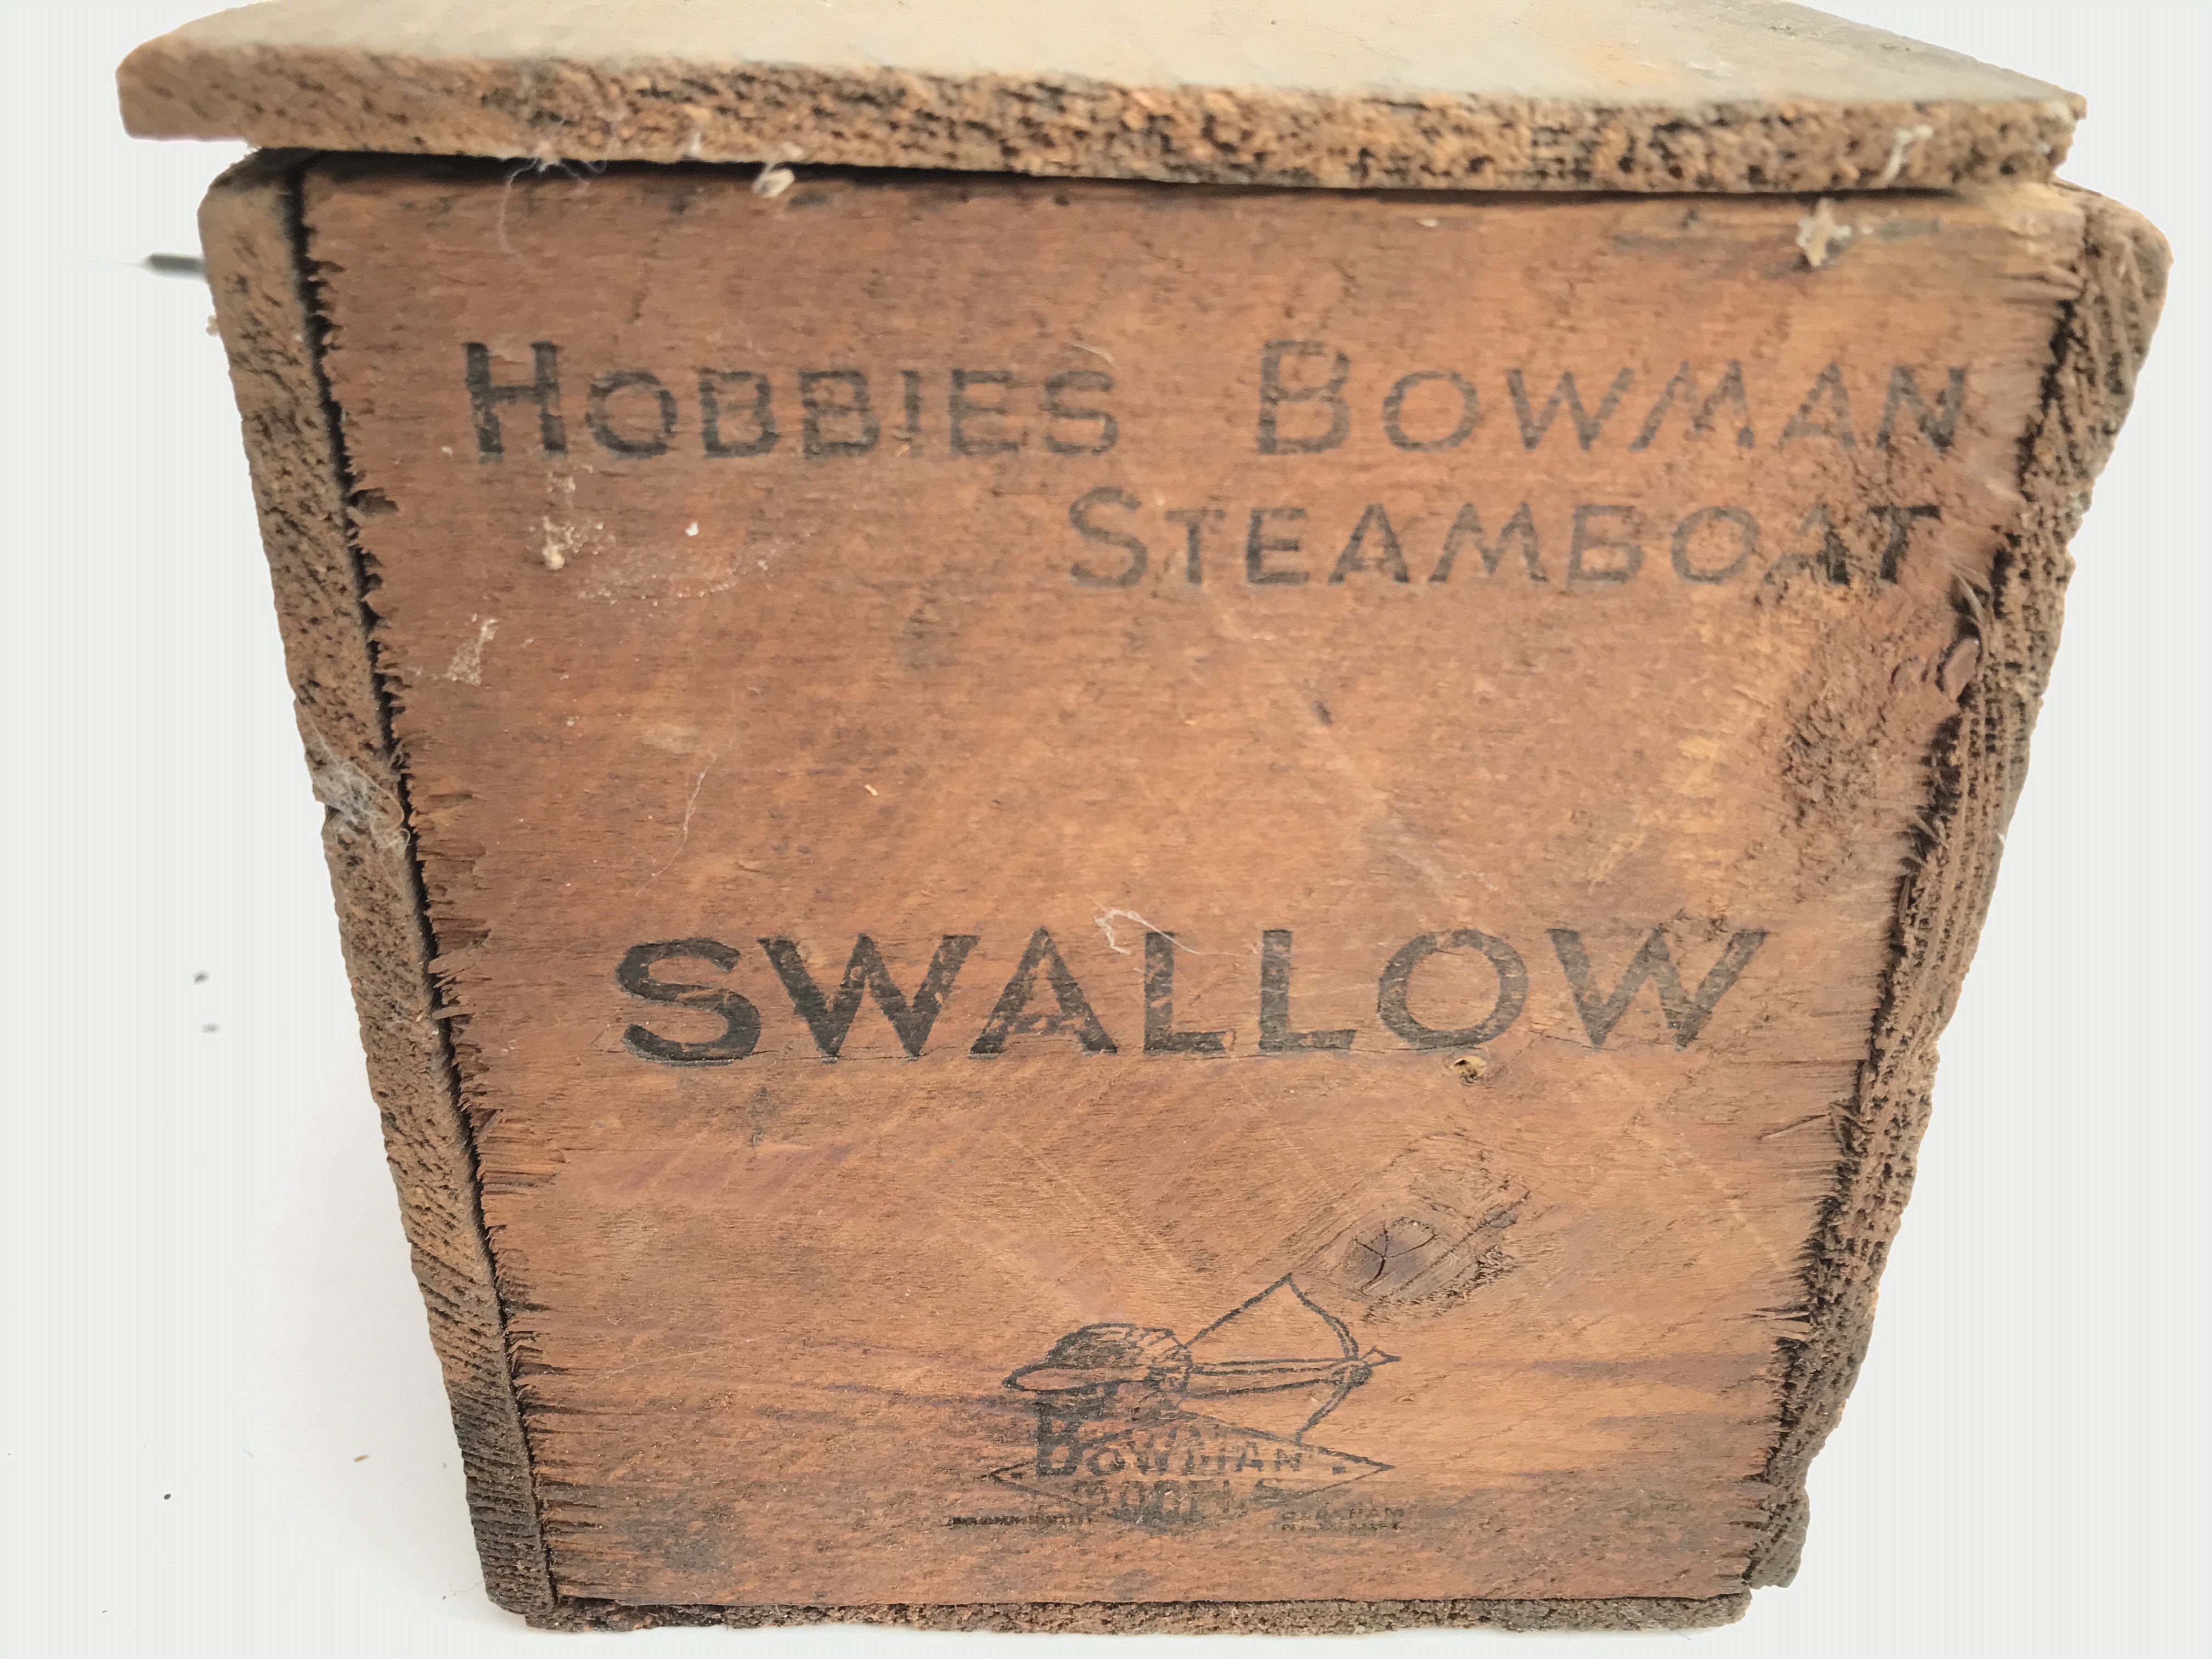 A Boxed Hobbies Bowman Steam Boat. Swallow. - Bild 3 aus 3